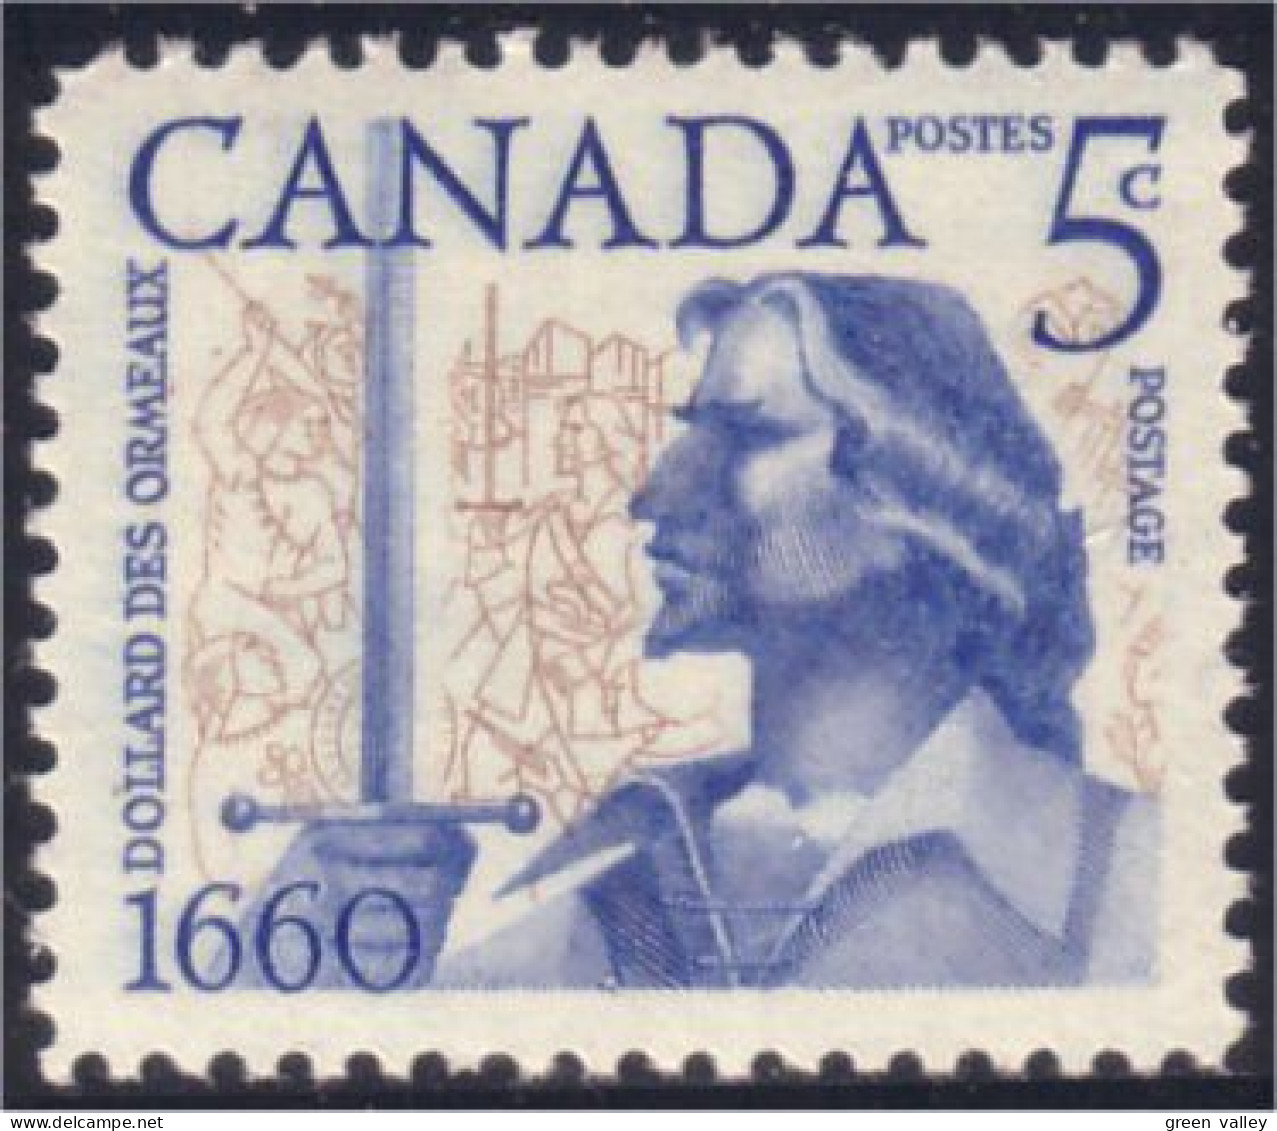 Canada Dollard Des Ormeaux MNH ** Neuf SC (03-90a) - Neufs